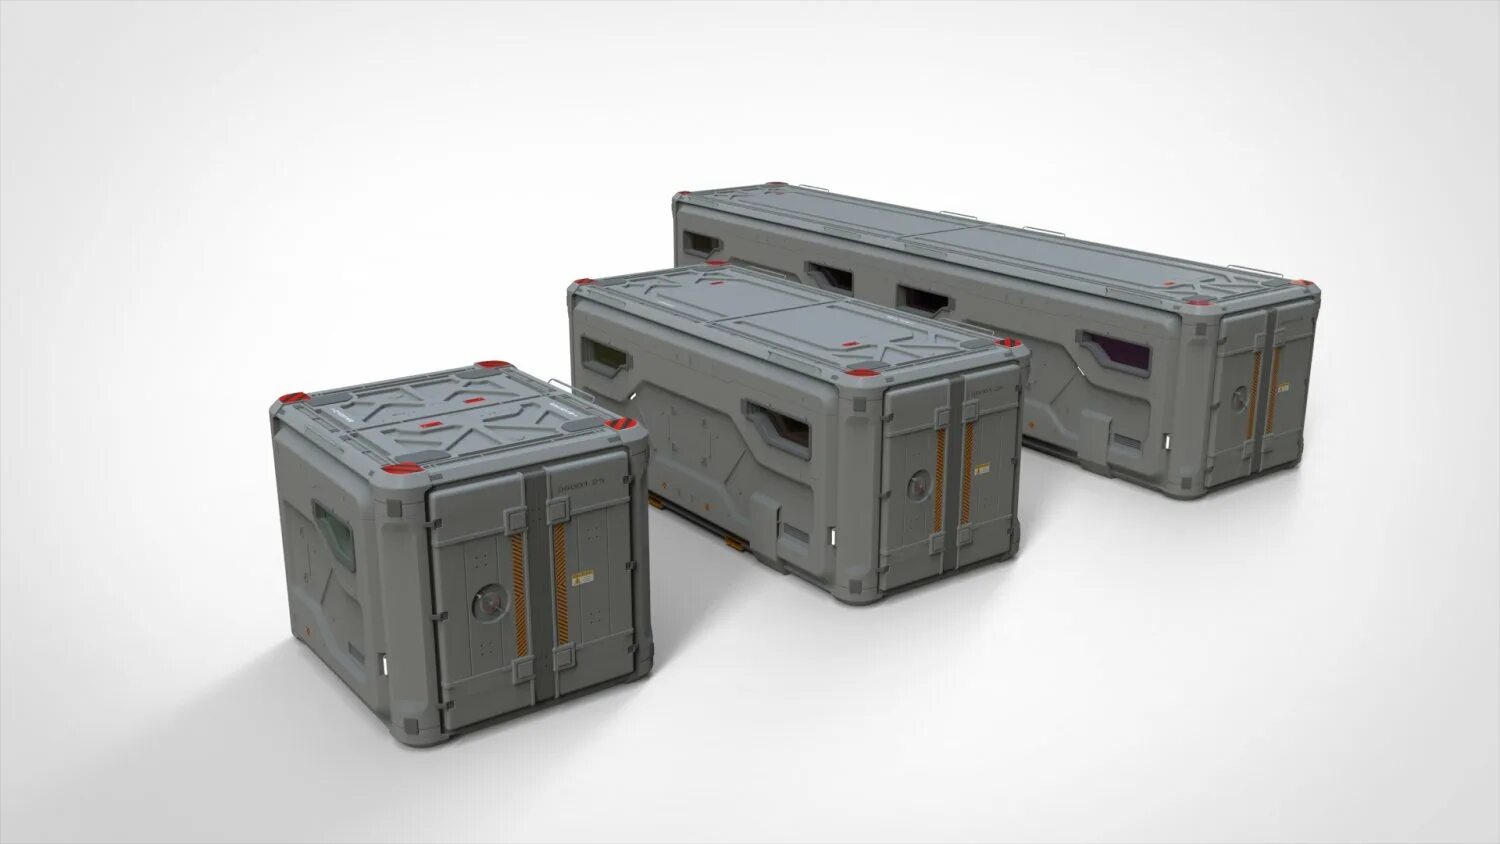 Включи контейнер 2. Sci Fi контейнер. Sci Fi Cargo Container. Грузовой ящик Sci Fi. Контейнер будущего.